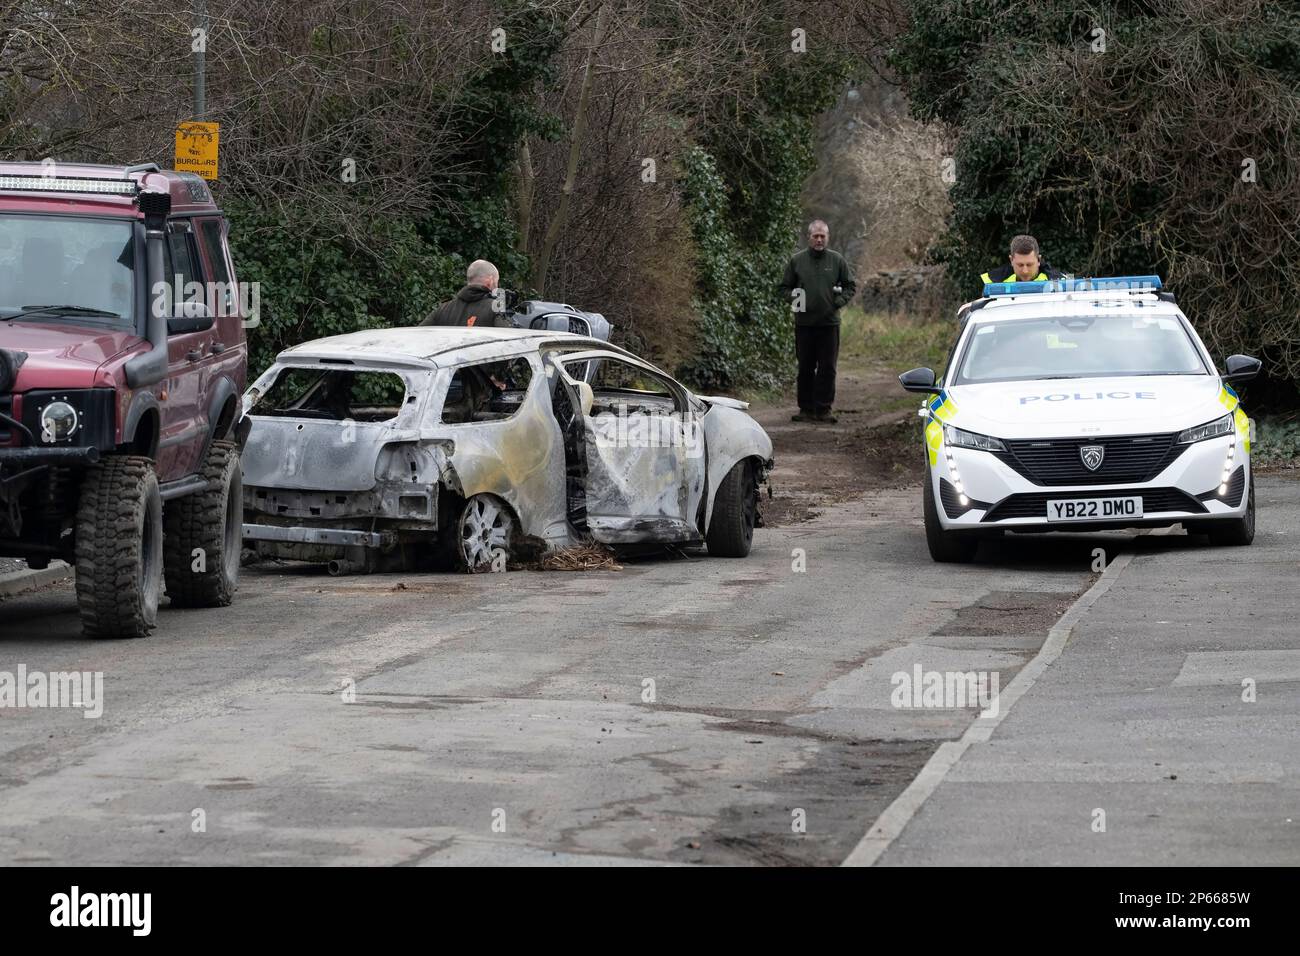 Polizeiauto und Geländefahrzeug am Tatort eines abgefackelten Wagens, das in einer Sackgasse in West Yorkshire aufgegeben wurde Stockfoto